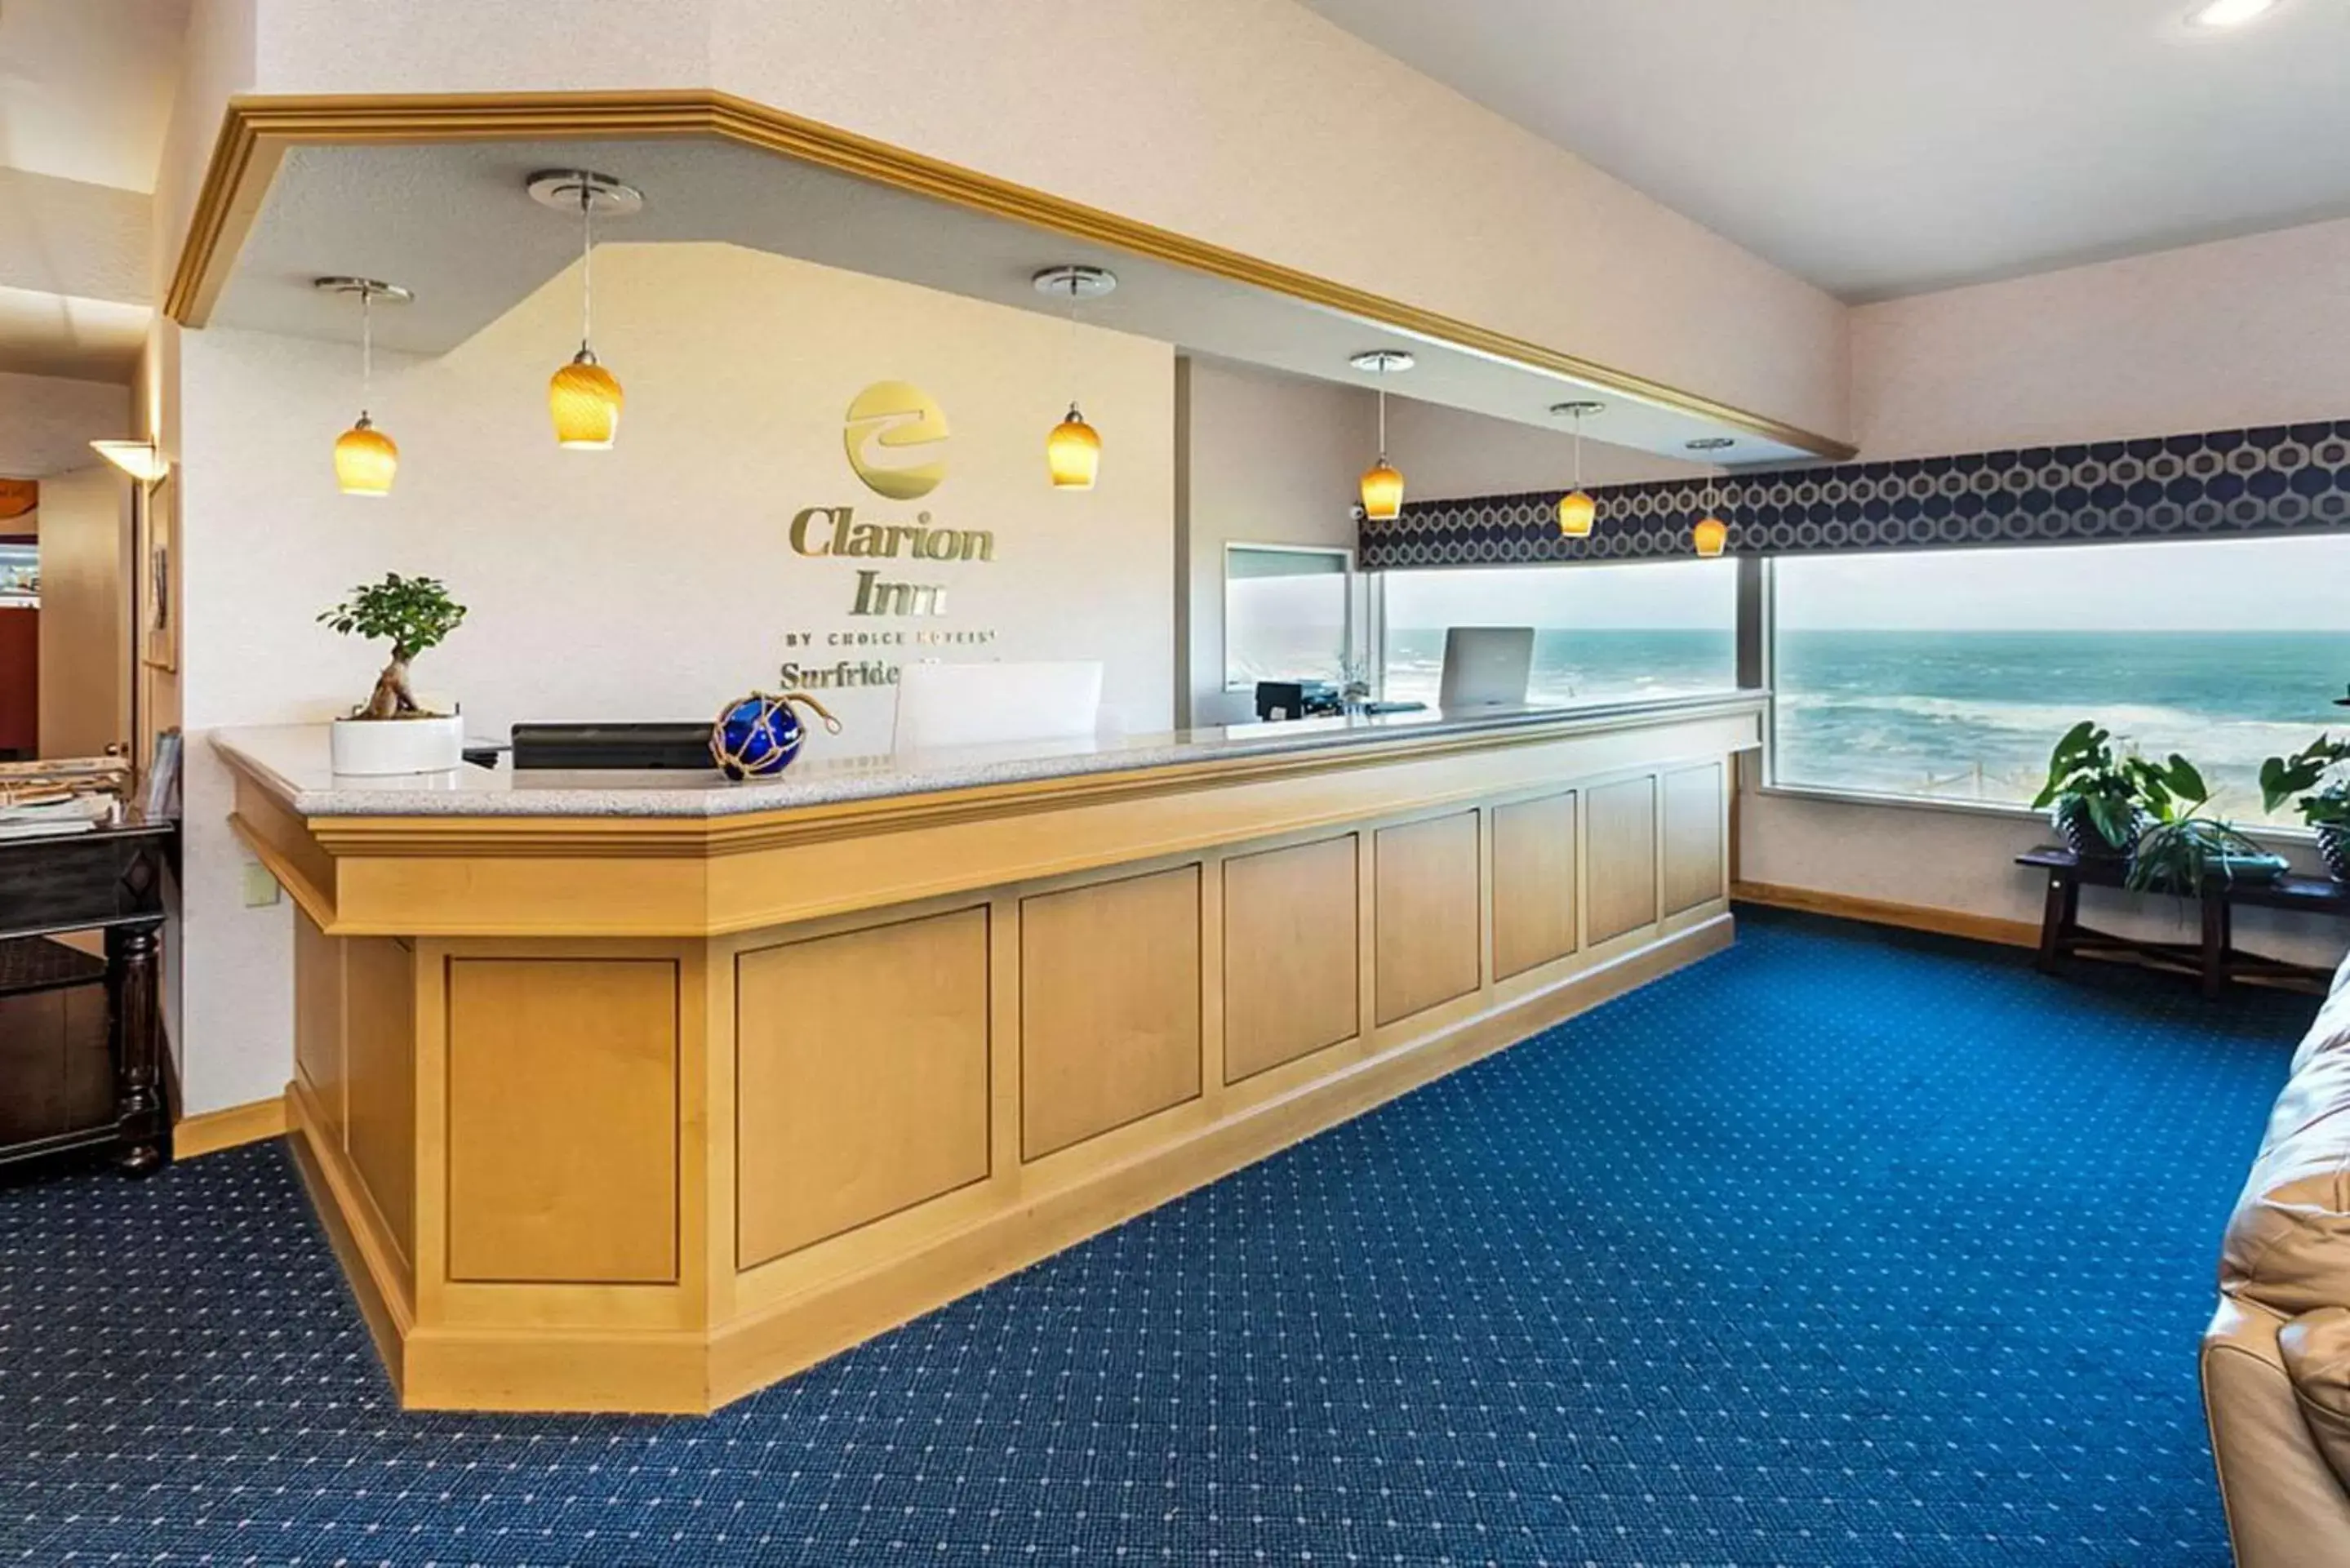 Lobby or reception in Clarion Inn Surfrider Resort